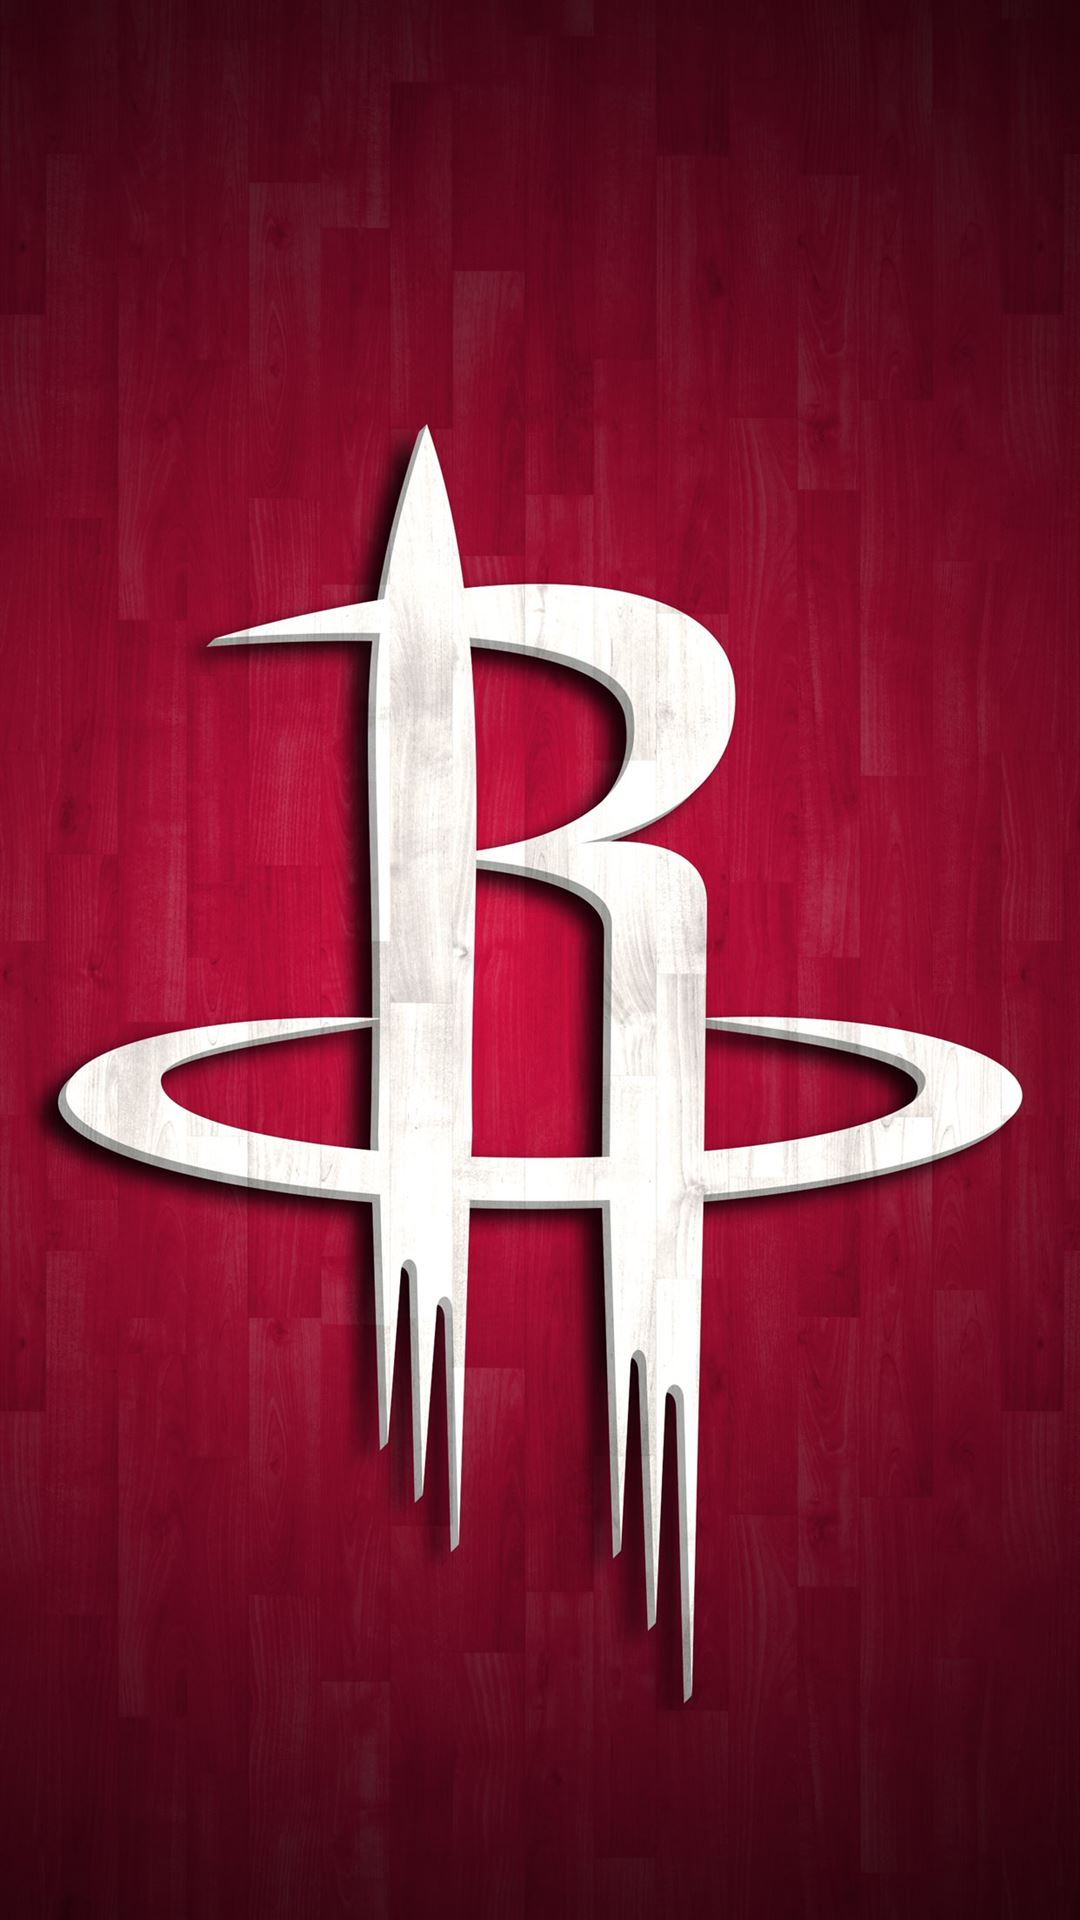 Houston Rockets Logo 2018 , HD Wallpaper & Backgrounds